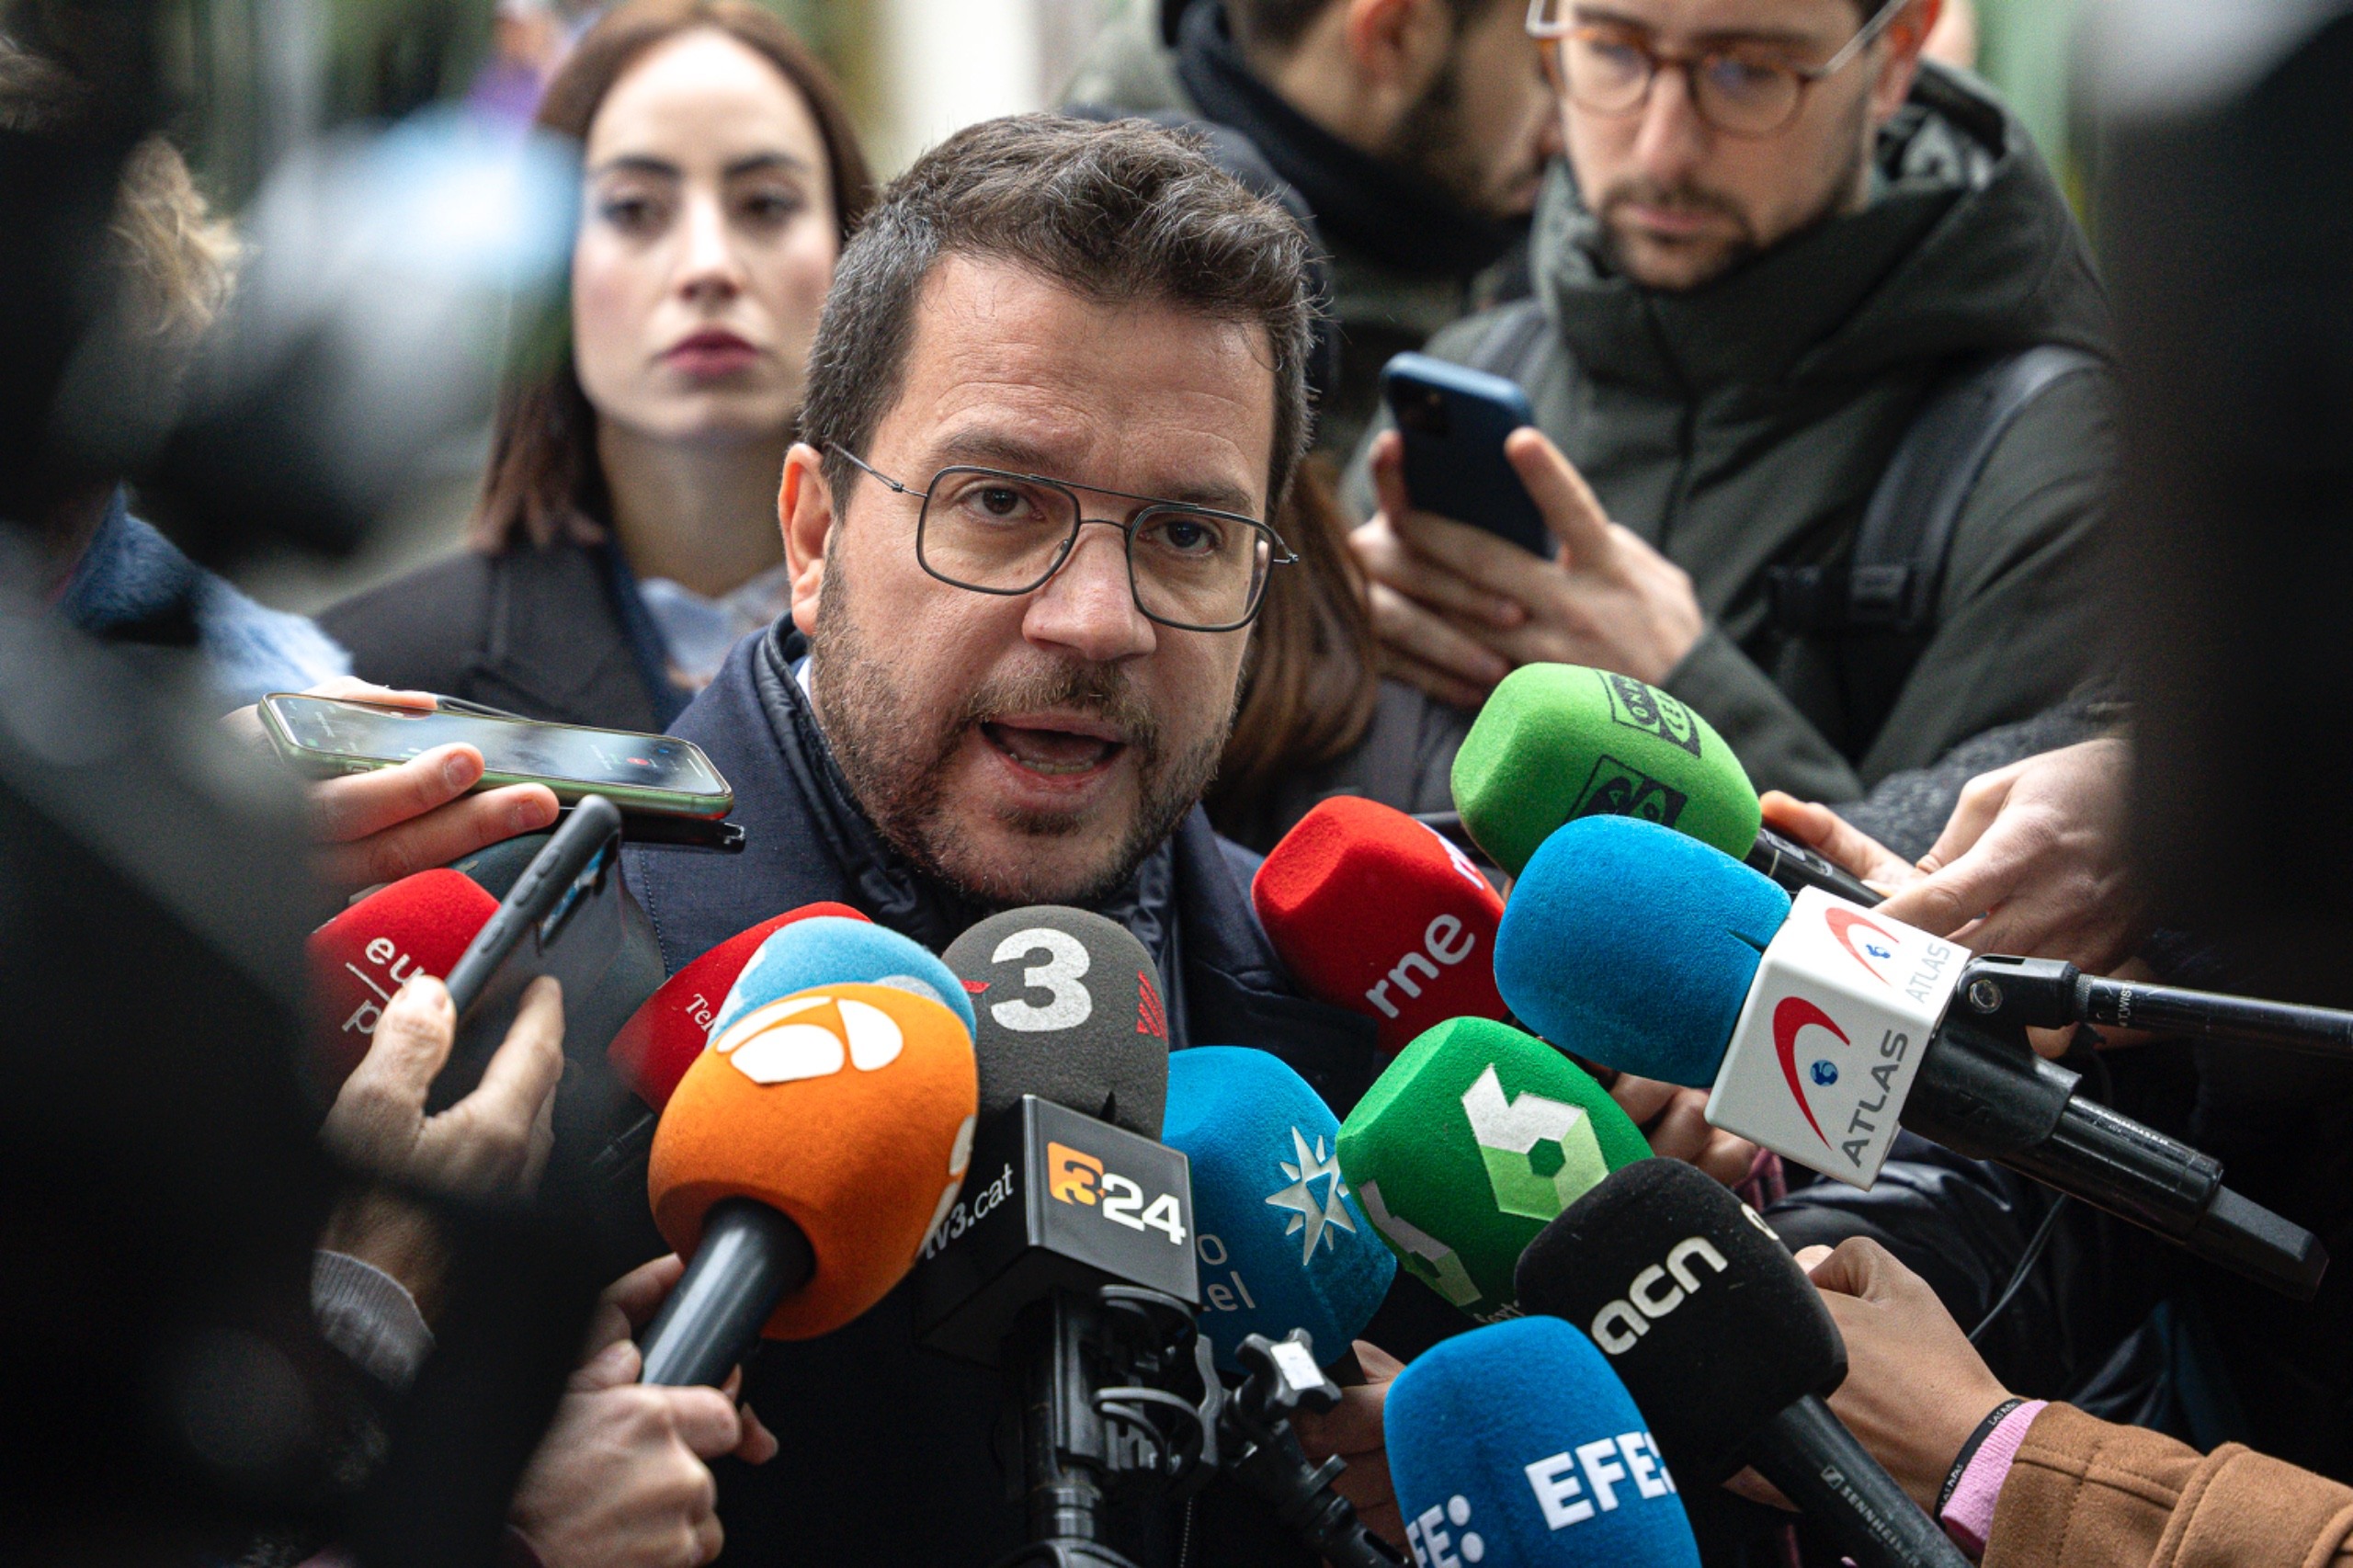 Pere Aragonès al jutge: "El CNI m'ha espiat i el govern espanyol té l'obligació de desclassificar-ho"